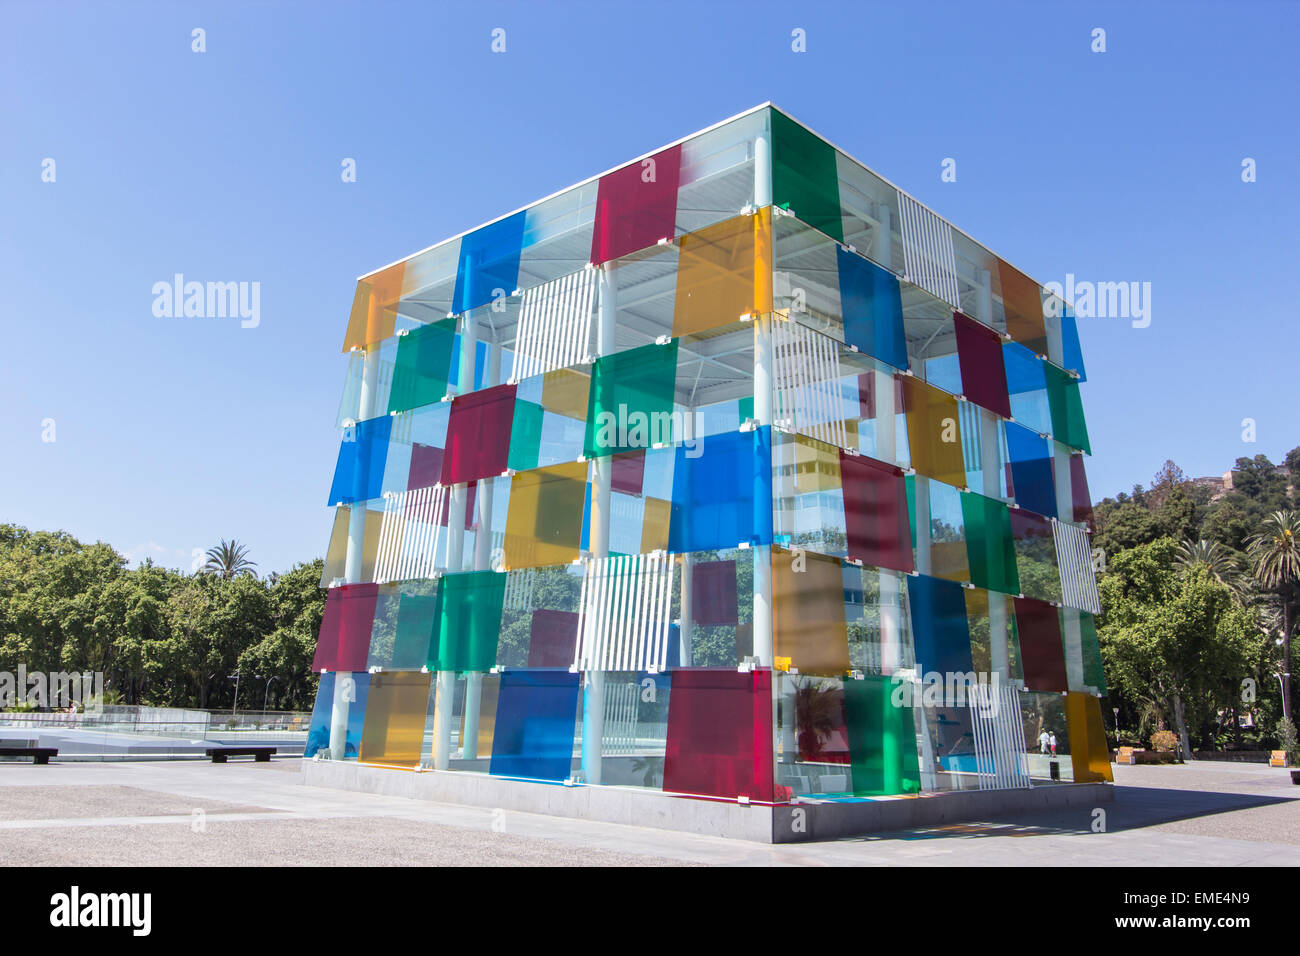 The Pompidou Art Centre, Muelle Uno, Malaga Port, Costa del Sol, Spain. The 'Cube', opened March 28th, 2015. Stock Photo